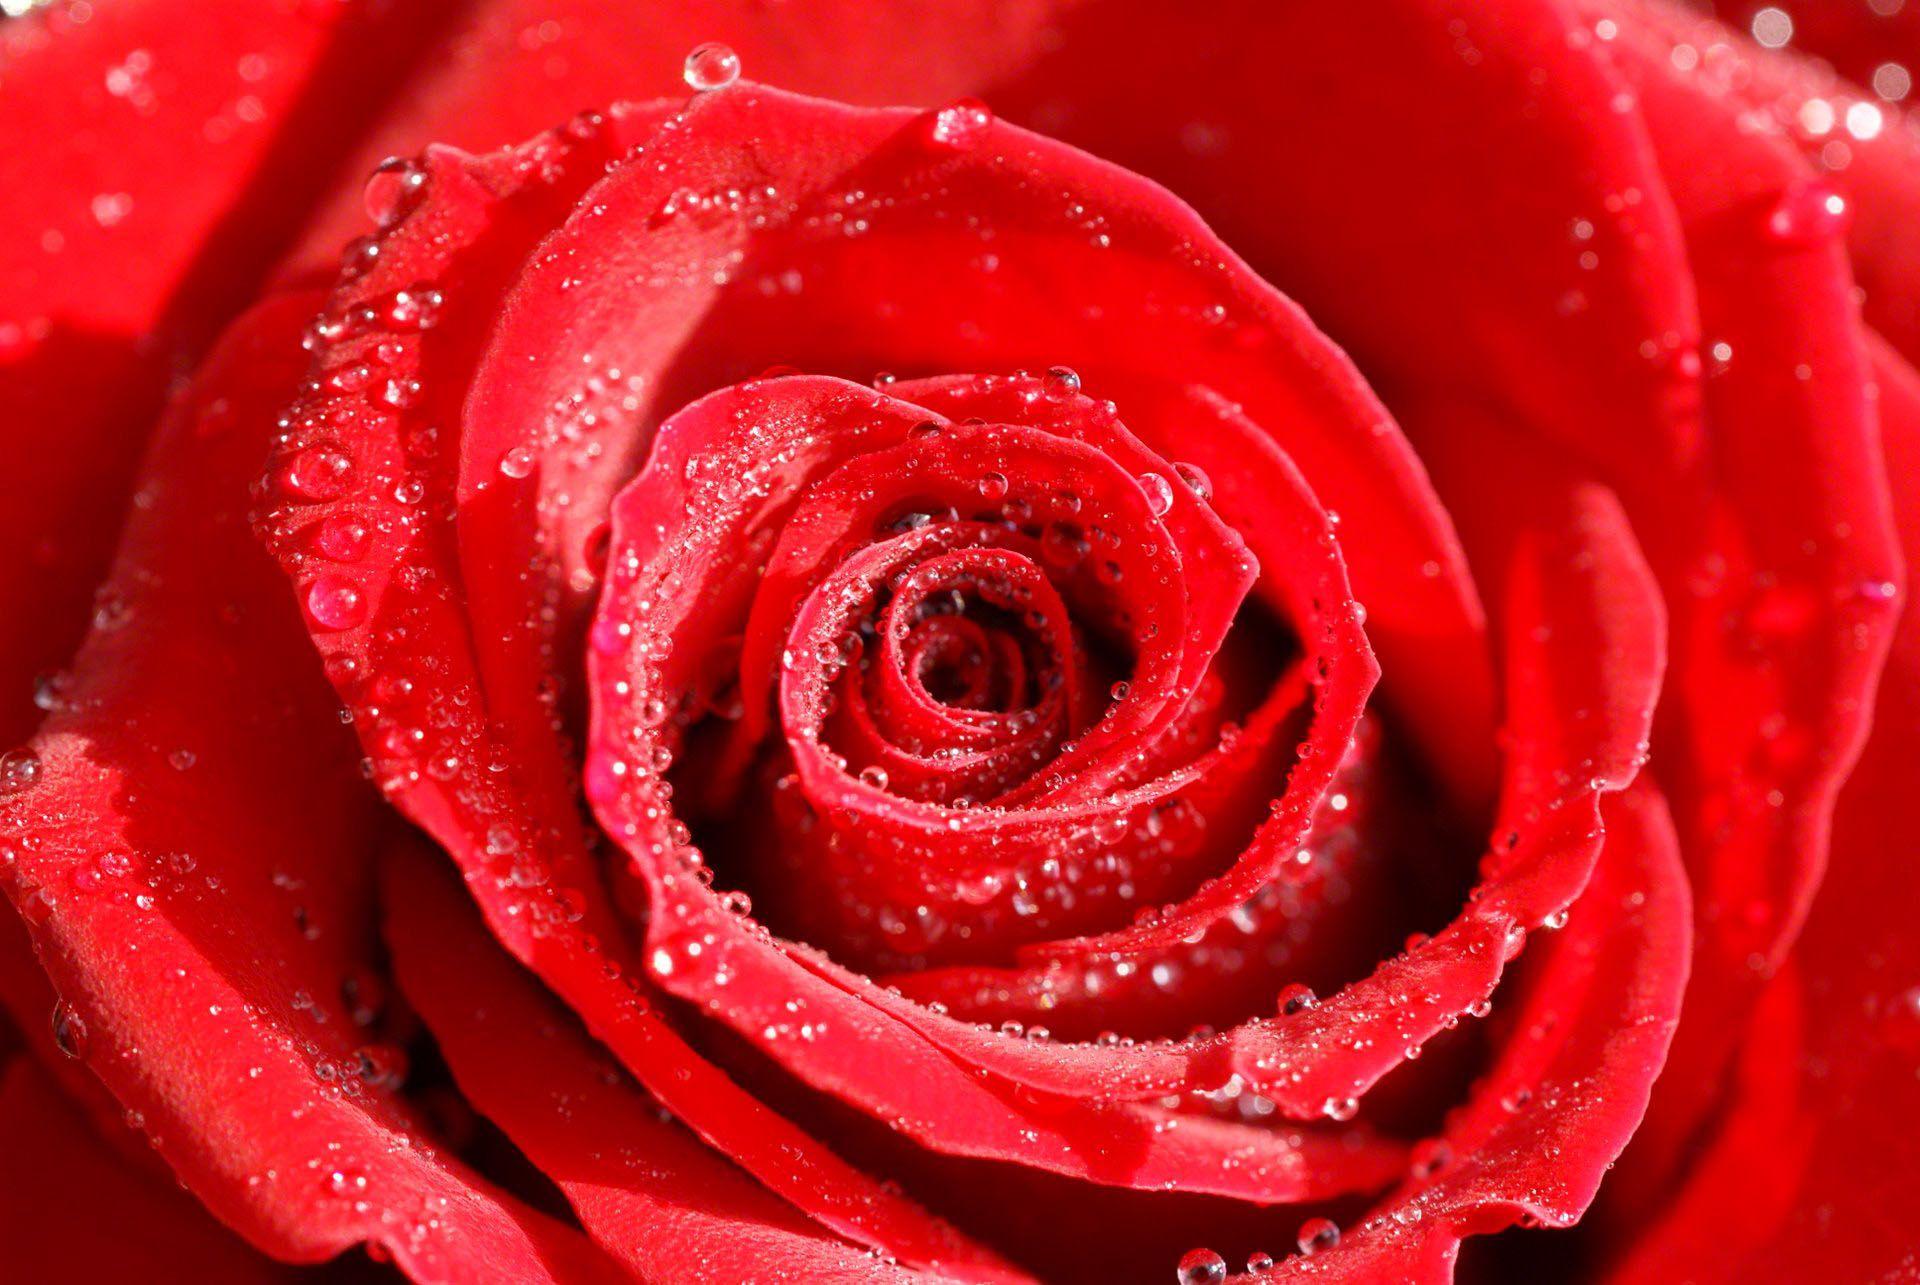 Rose Flowers Wallpaper For Desktop Full HD Pics Background Roses